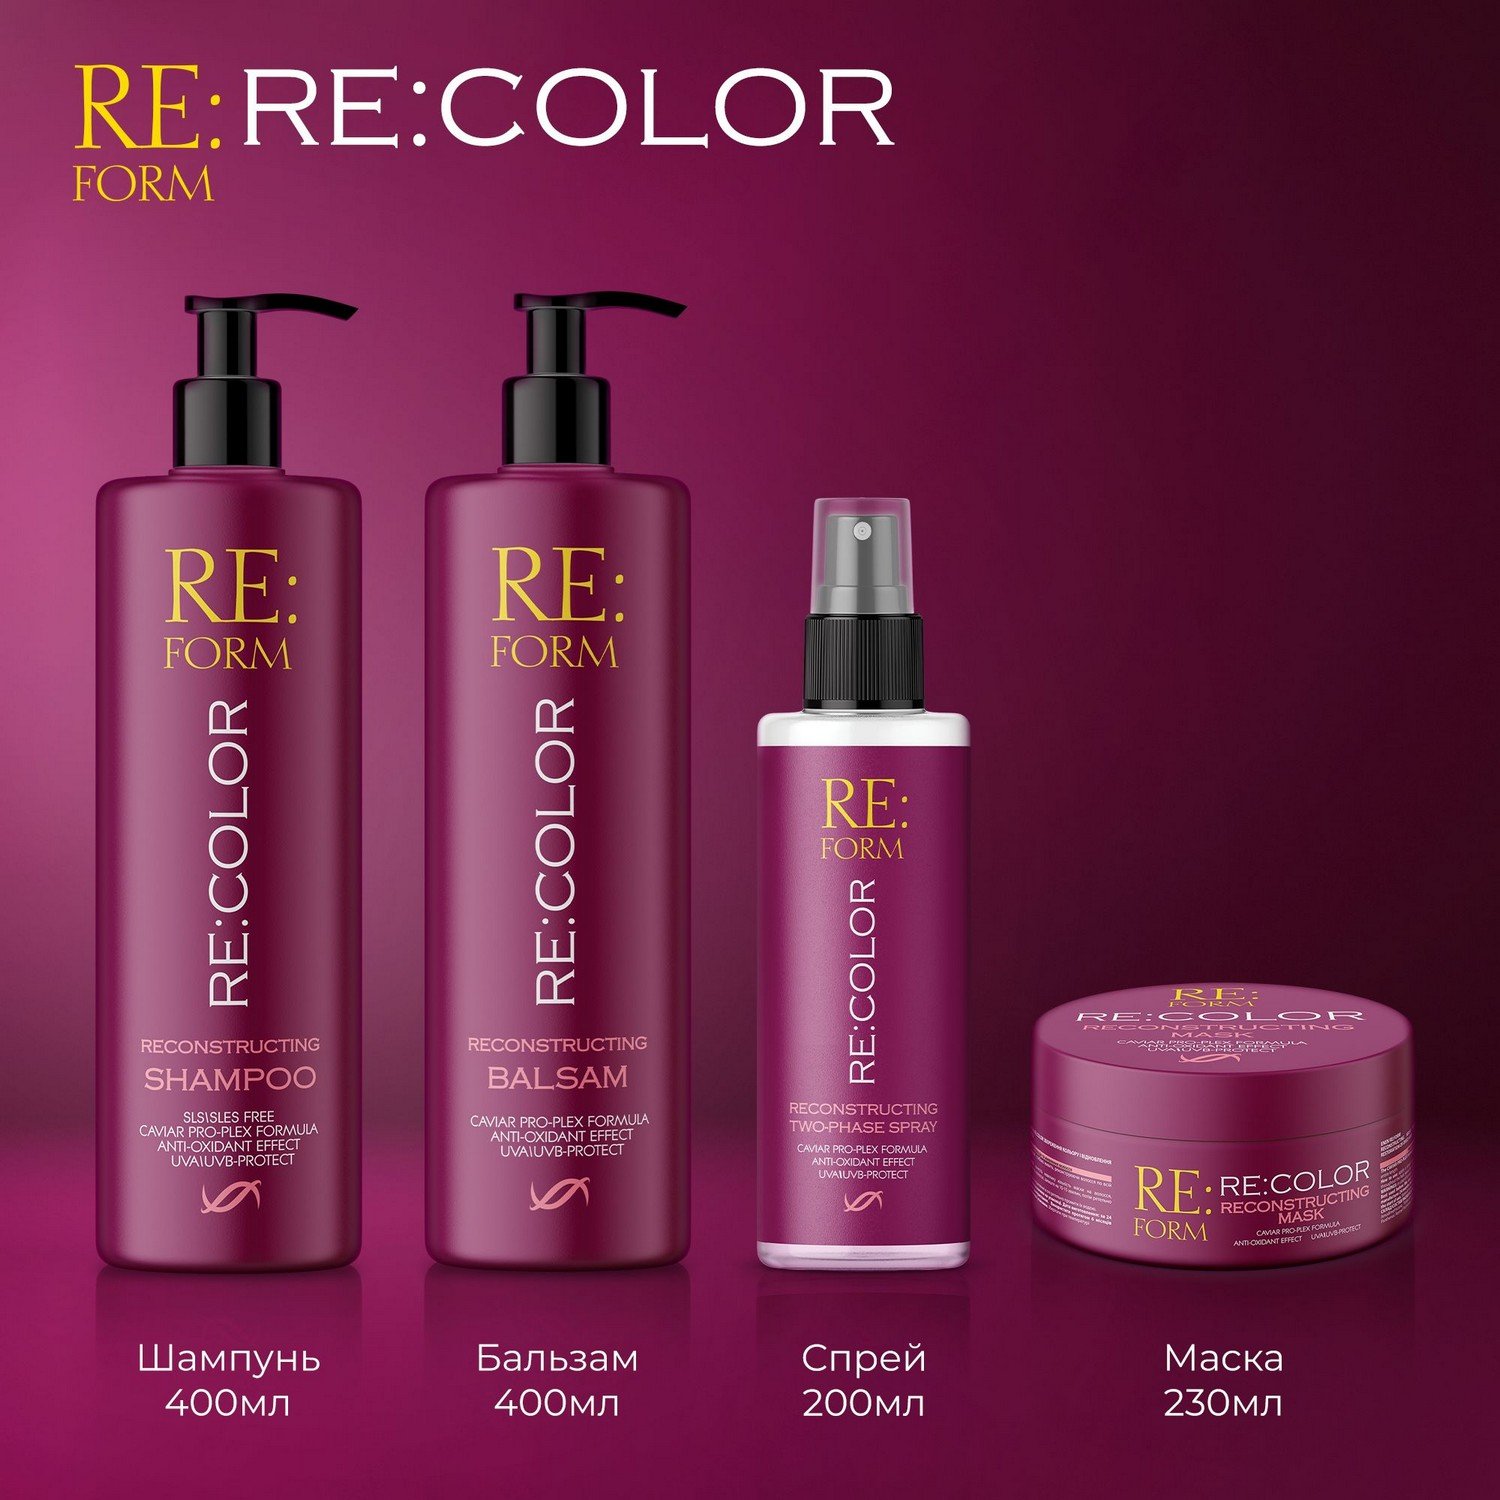 Реконструирующий шампунь Re:form Re:color Сохранение цвета и восстановление окрашенных волос, 400 мл - фото 9